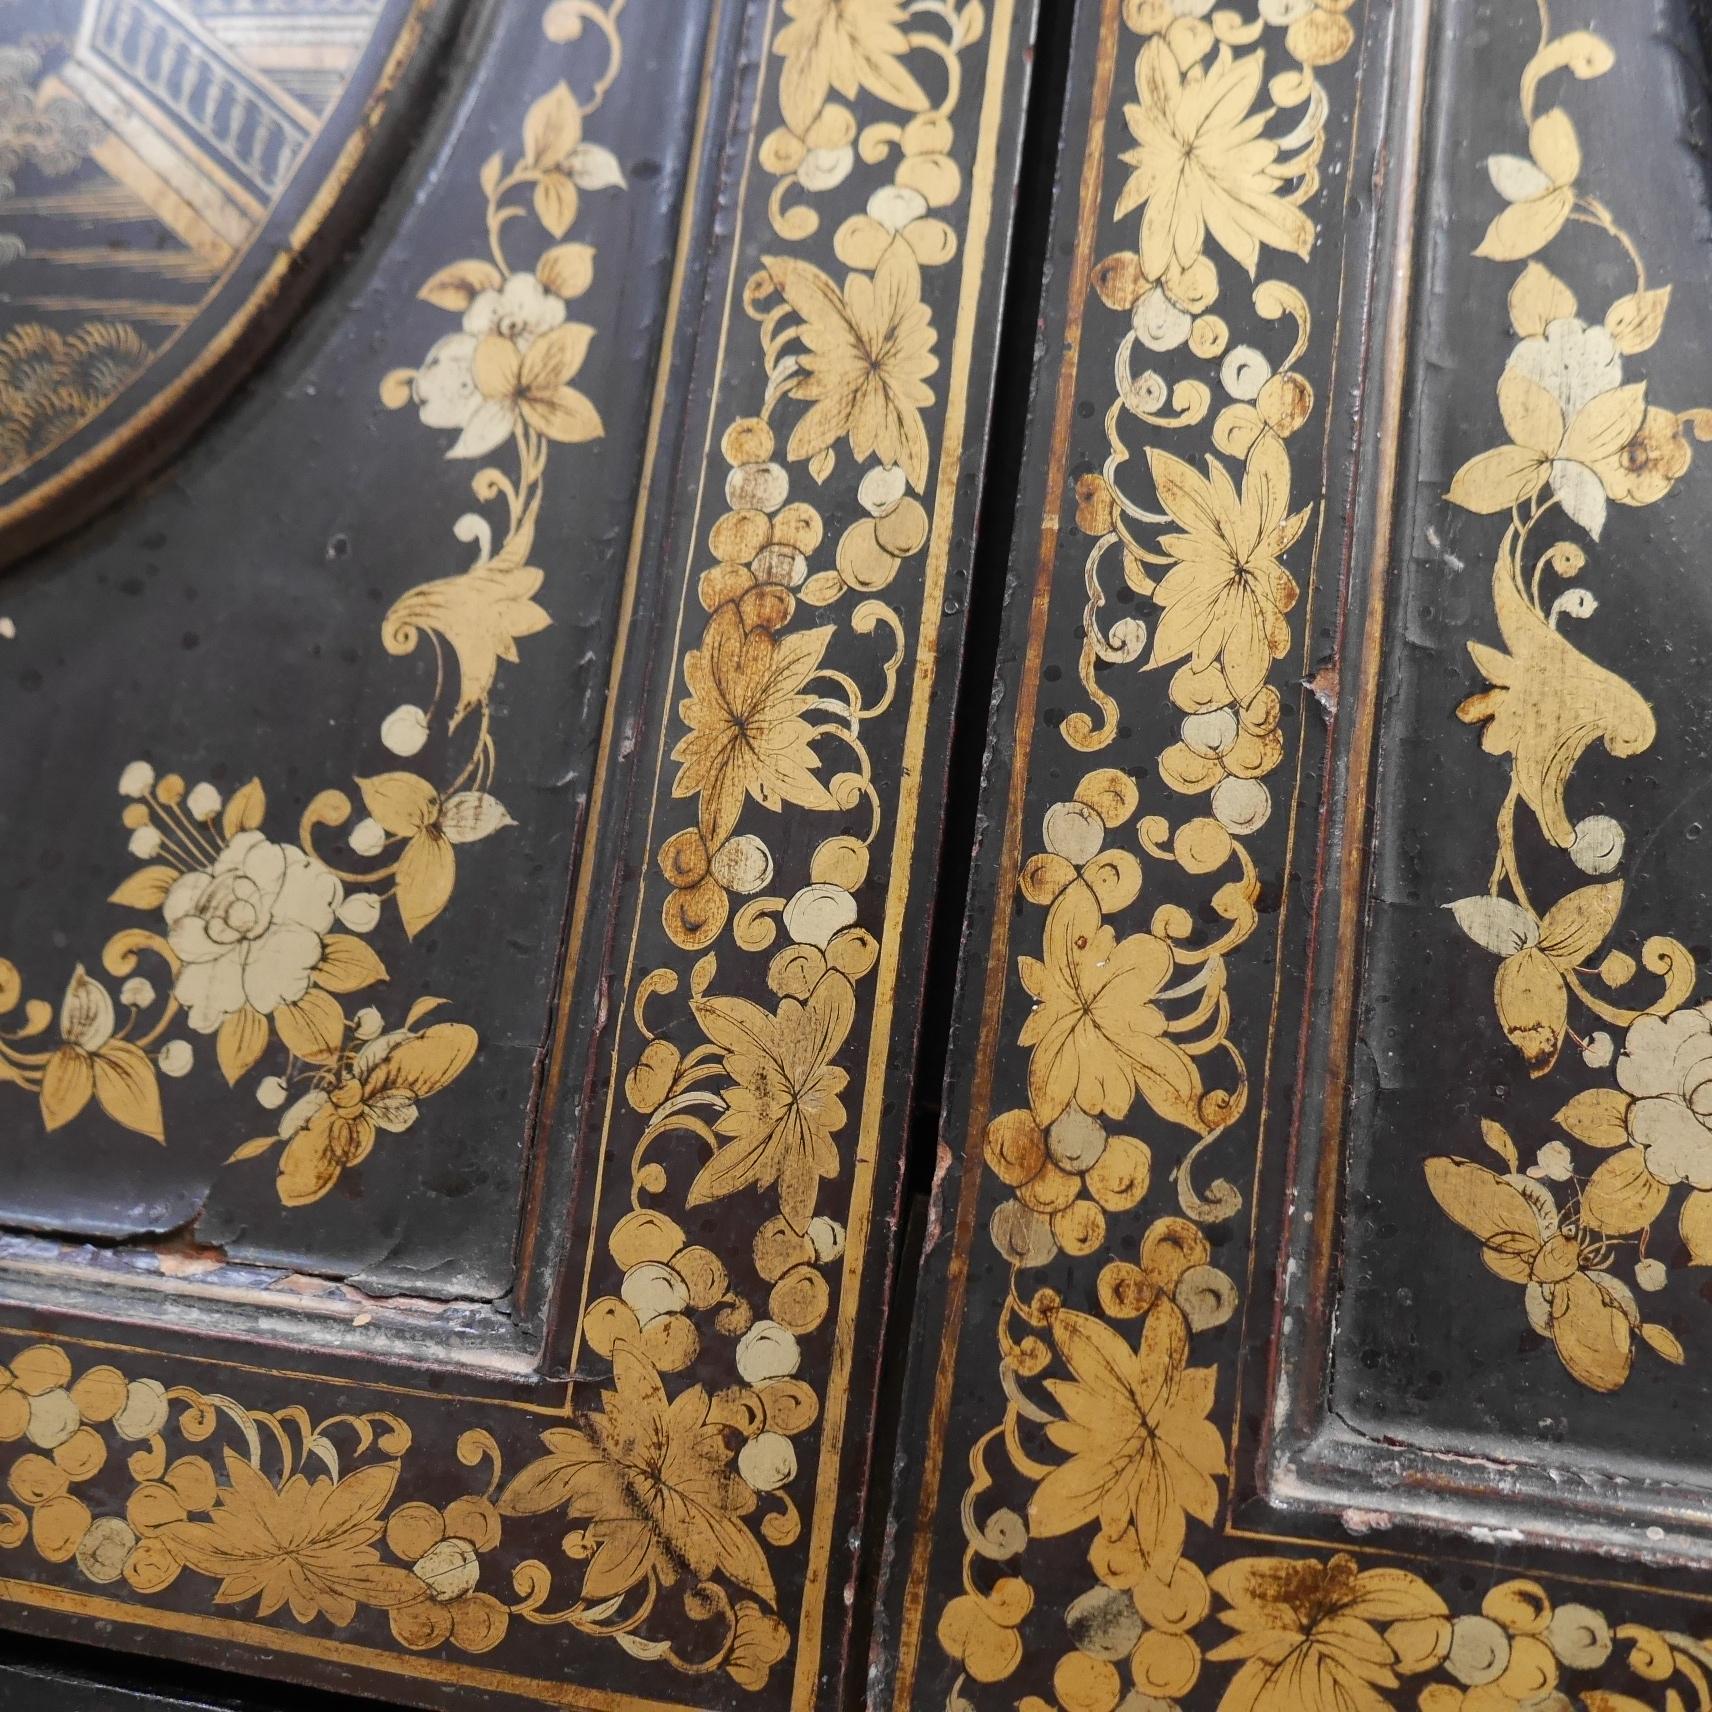 Cabinet de chinoiserie d'exportation.
Magnifique meuble de table de style chinoiserie, laqué noir et peint à la main avec des détails dorés, dans un état de conservation exceptionnel. Les portes jumelles s'ouvrent pour révéler un intérieur en